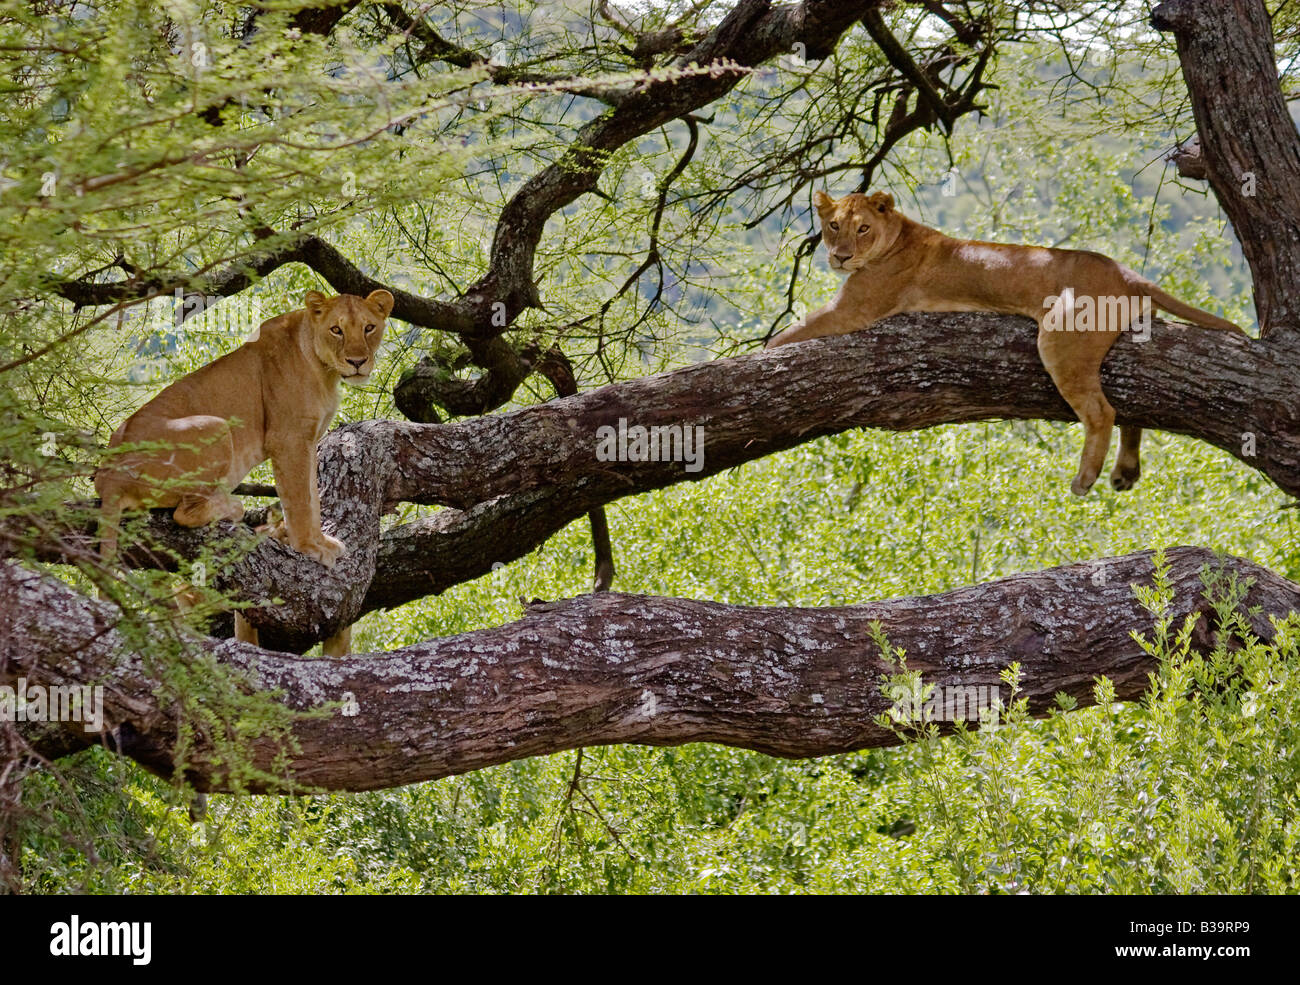 Les Lions femelle Panthera leo dans un arbre DU PARC NATIONAL DU LAC MANYARA TANZANIE Banque D'Images